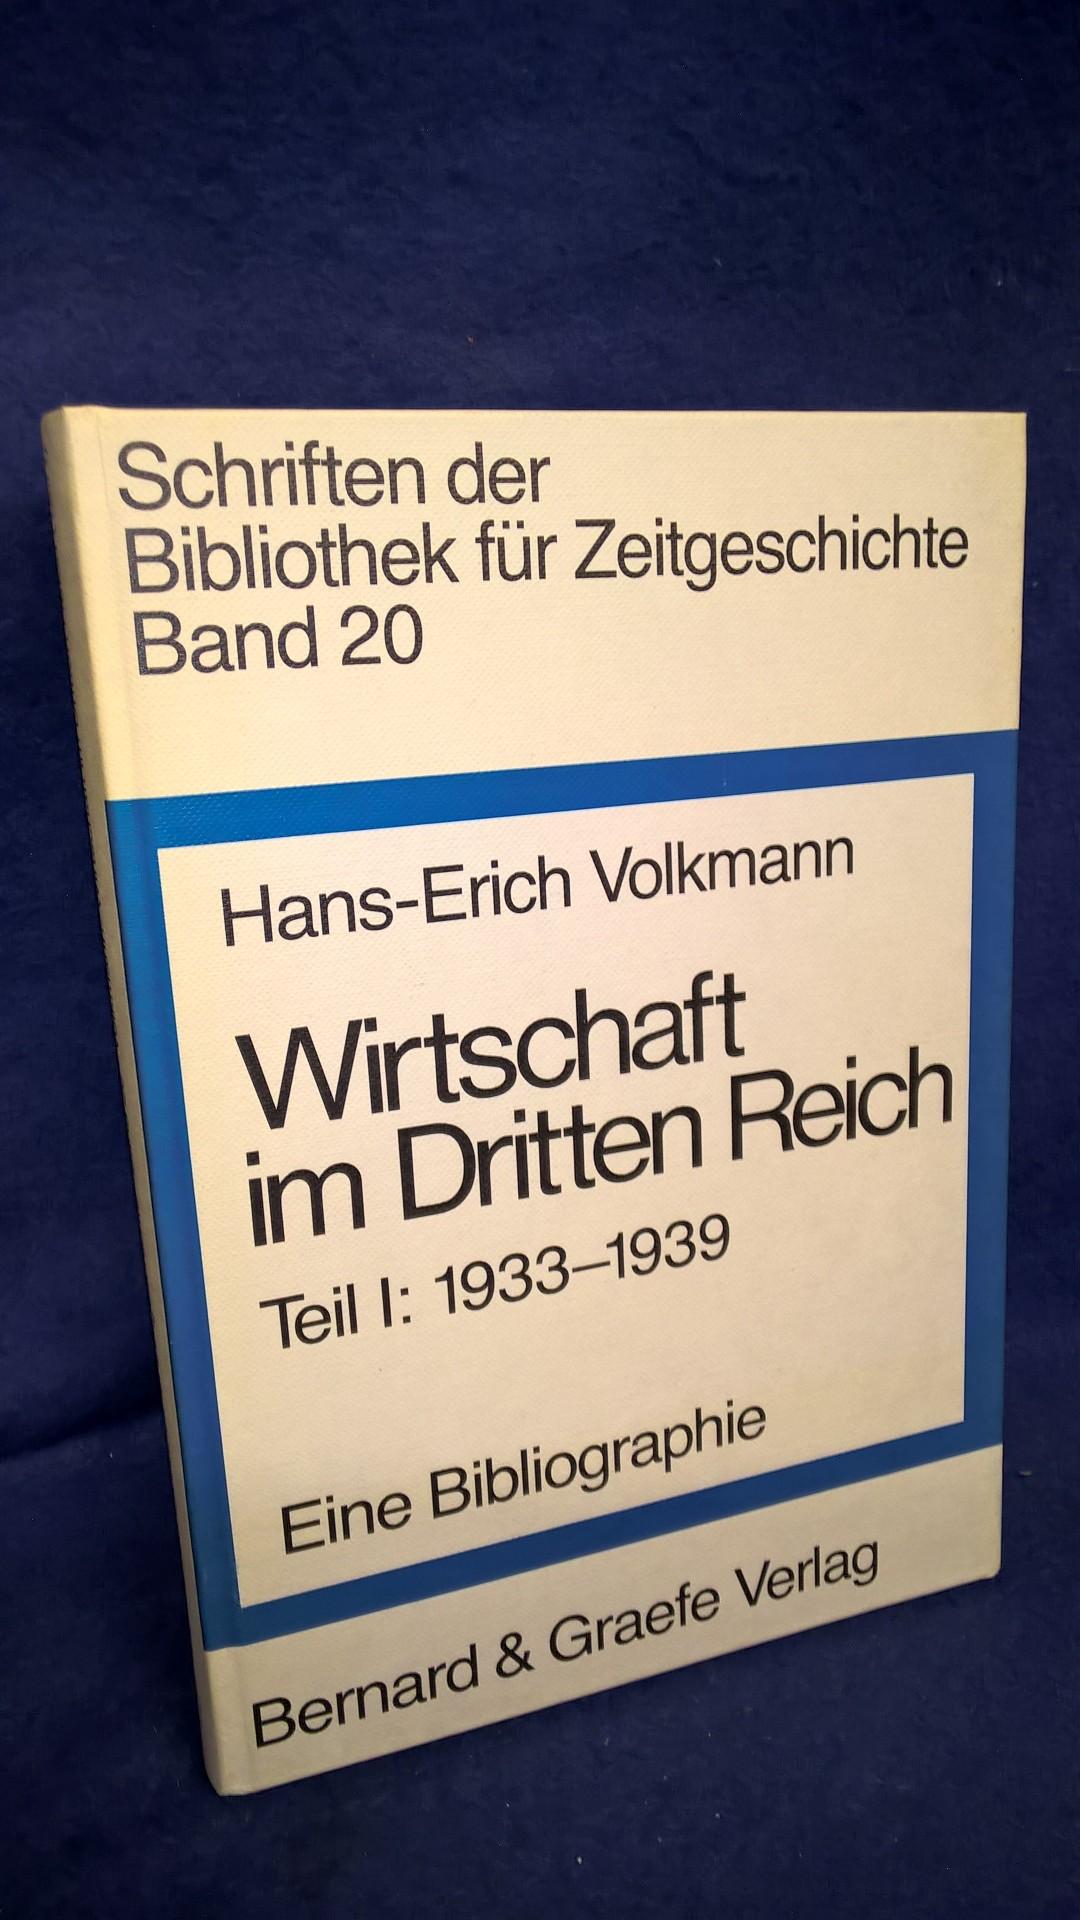 Schriften der Bibliothek für Zeitgeschichte Band 20 - Wirtschaft im Dritten Reich Teil I: 1933-1939 - Eine Bibliographie